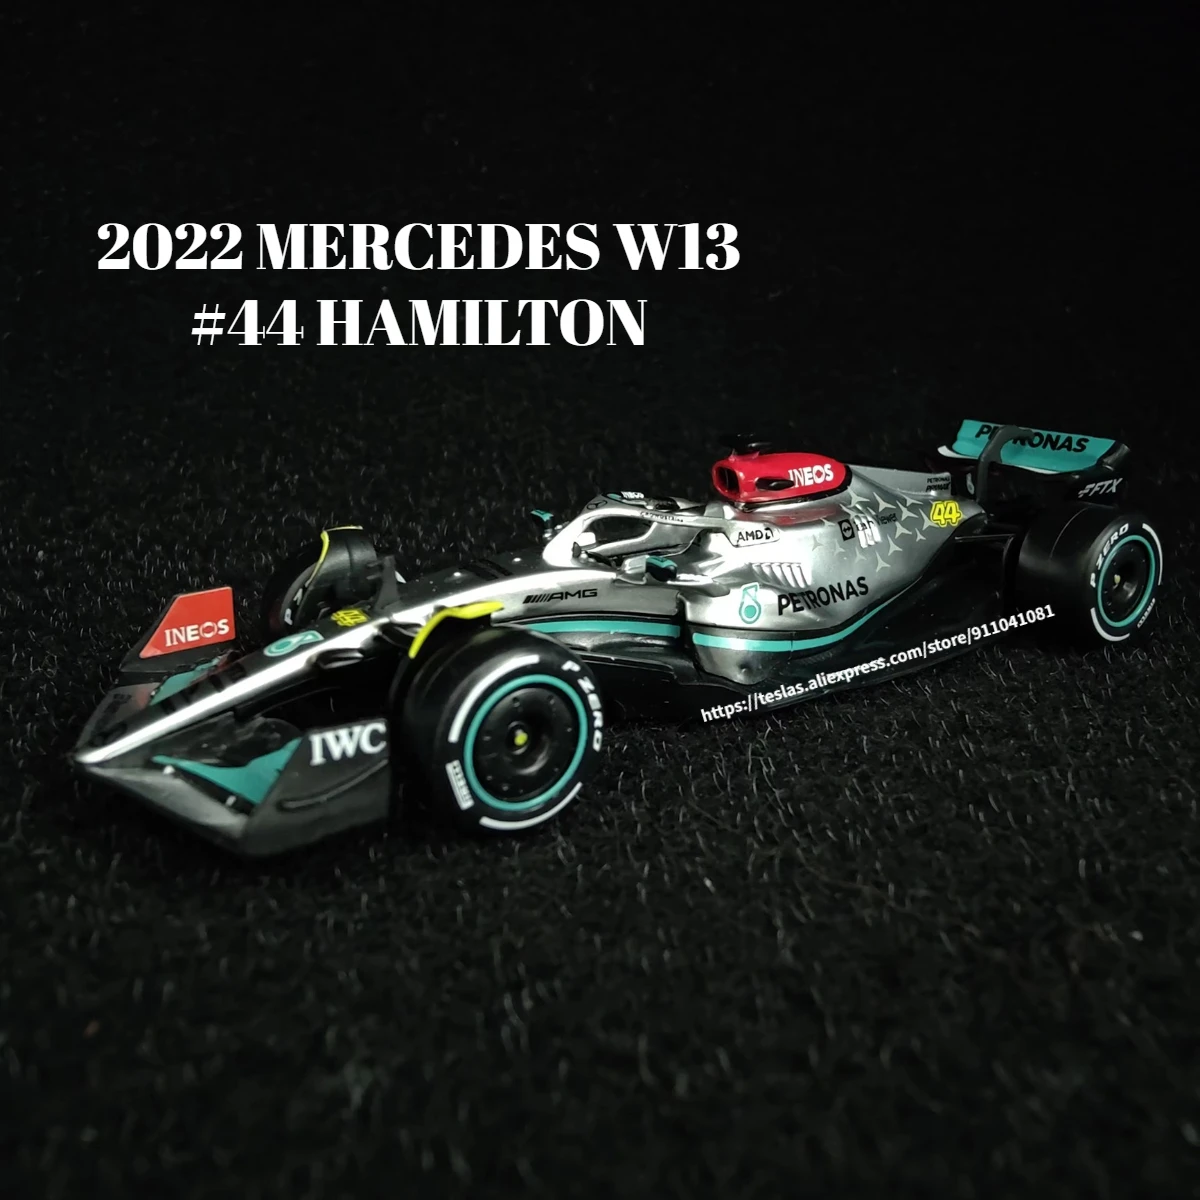 

Bburago NEW F1 2022 Car Model Scale 1:43 Mercedes W13 Hamilton Ferrari Red Bull Racing Alfa Romeo Mclaren Formula 1 Replica Toy